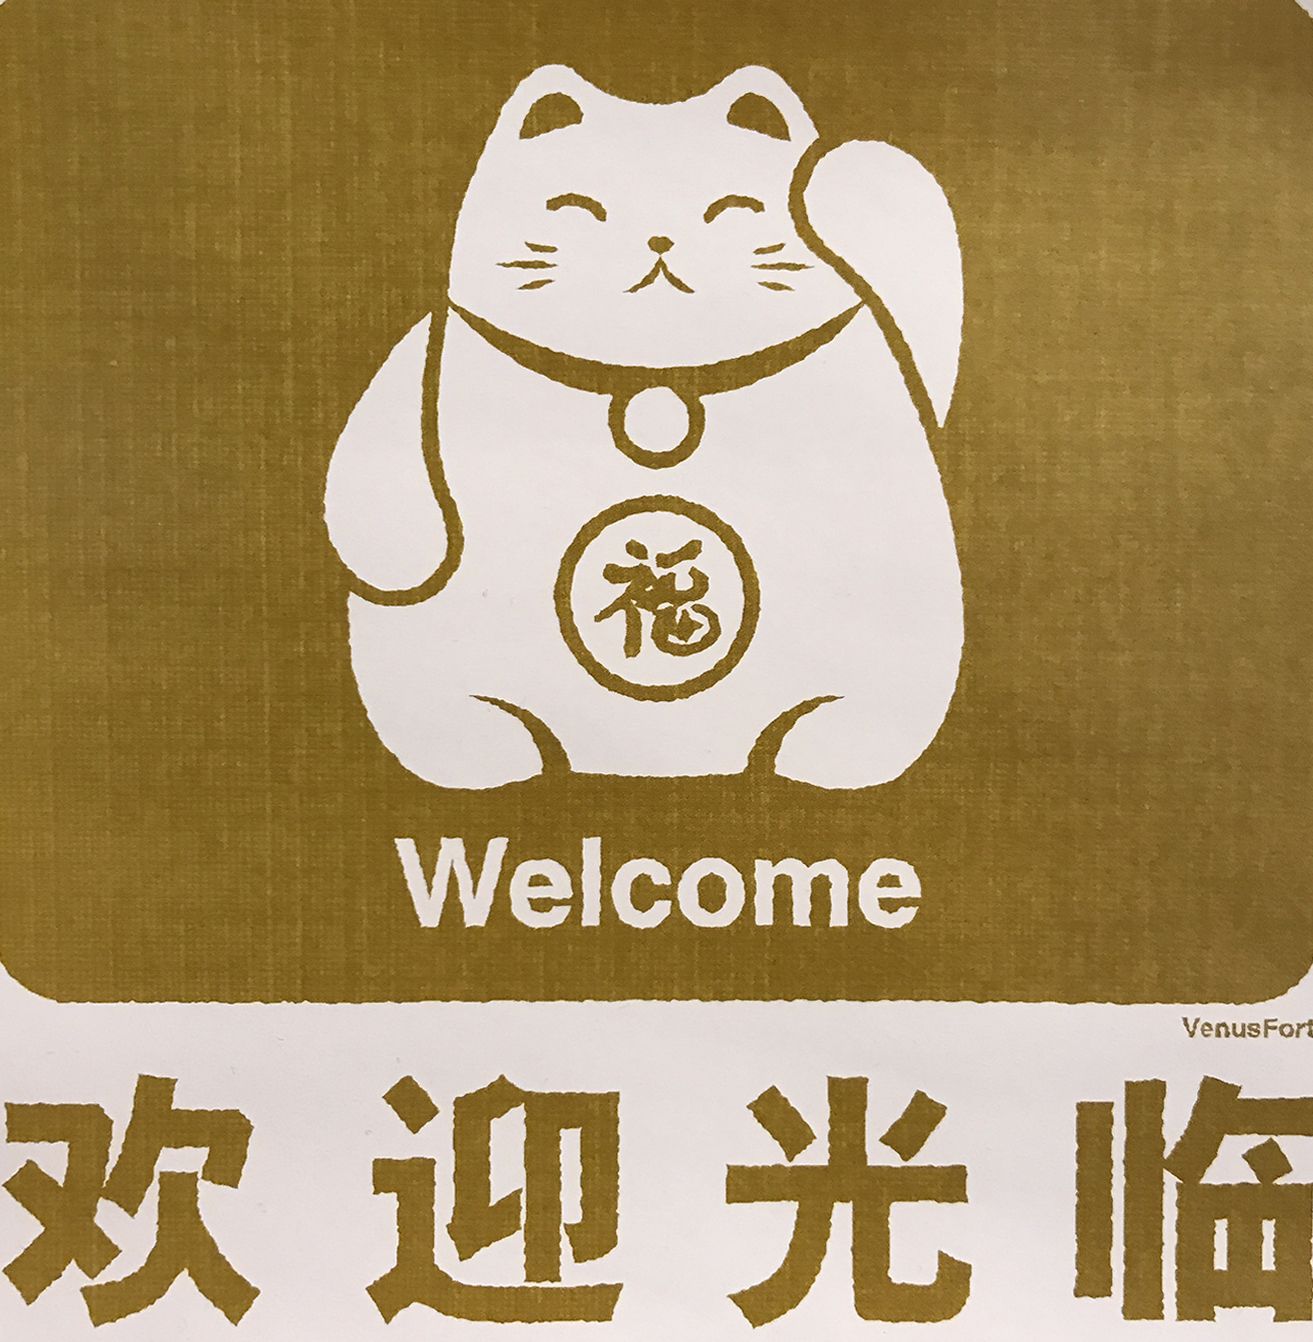 Japanska maca koja želi dobrodošlicu